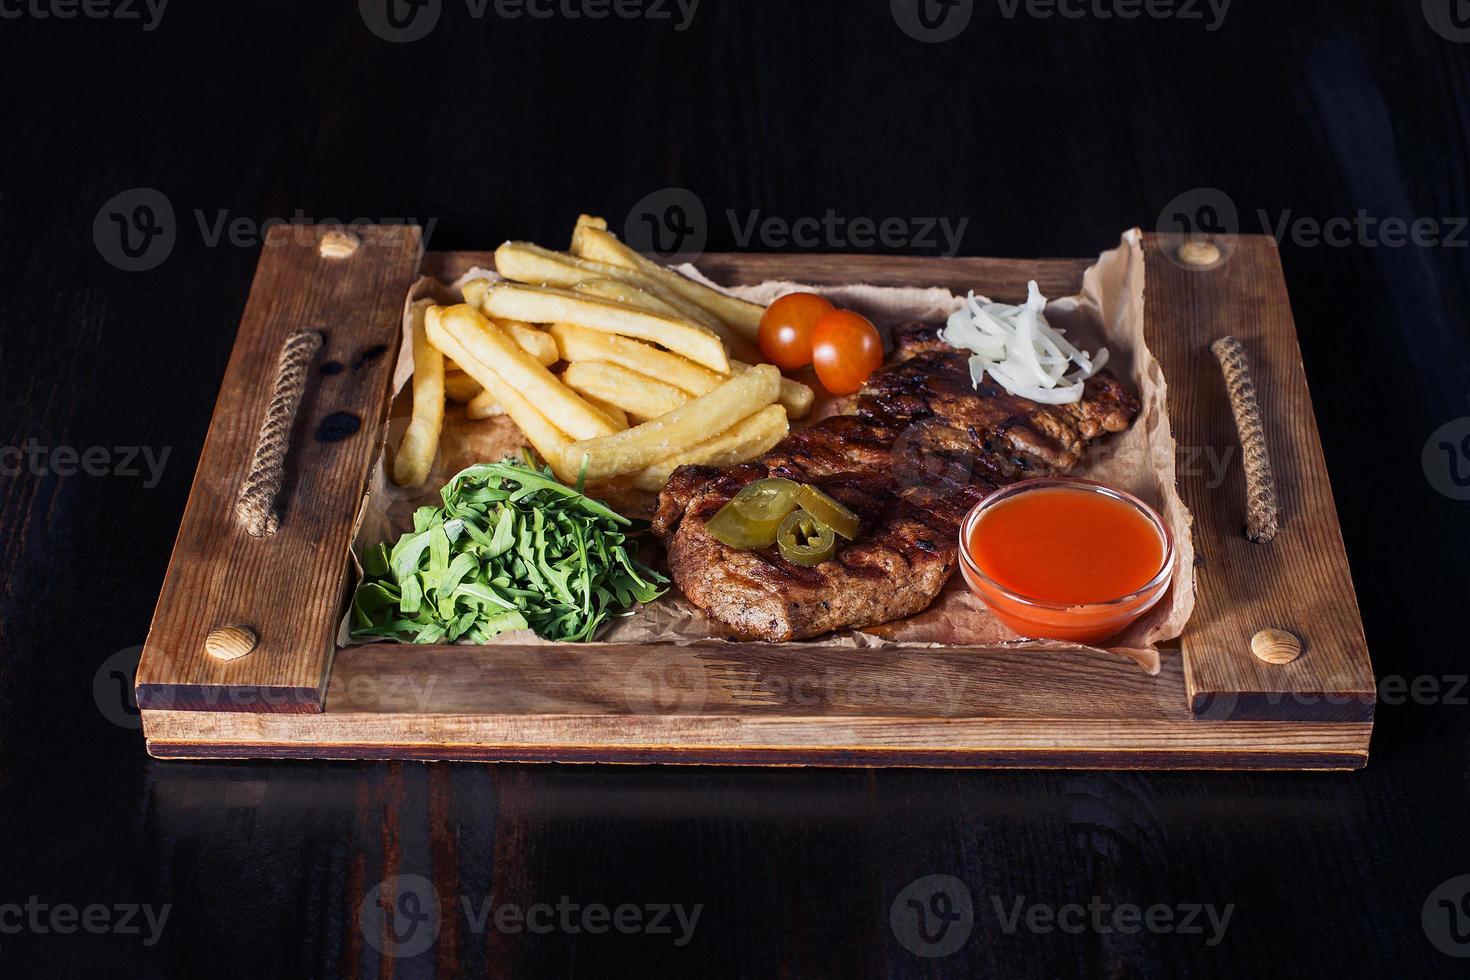 steak de filet avec frites sur un plateau en bois, belle portion, fond sombre photo